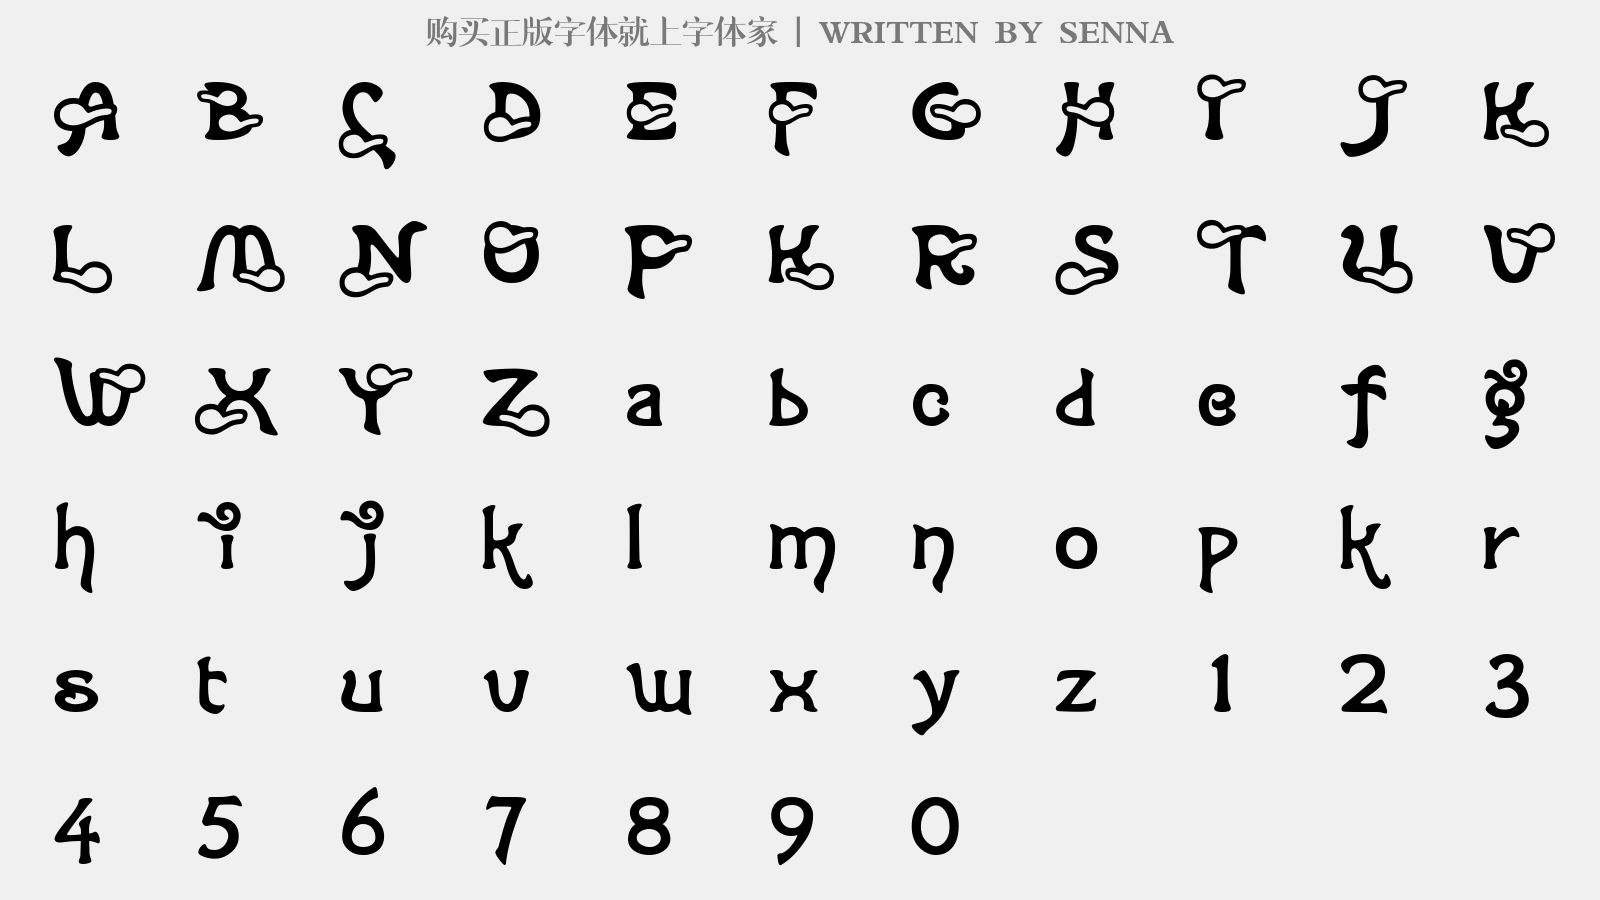 SENNA - 大写字母/小写字母/数字